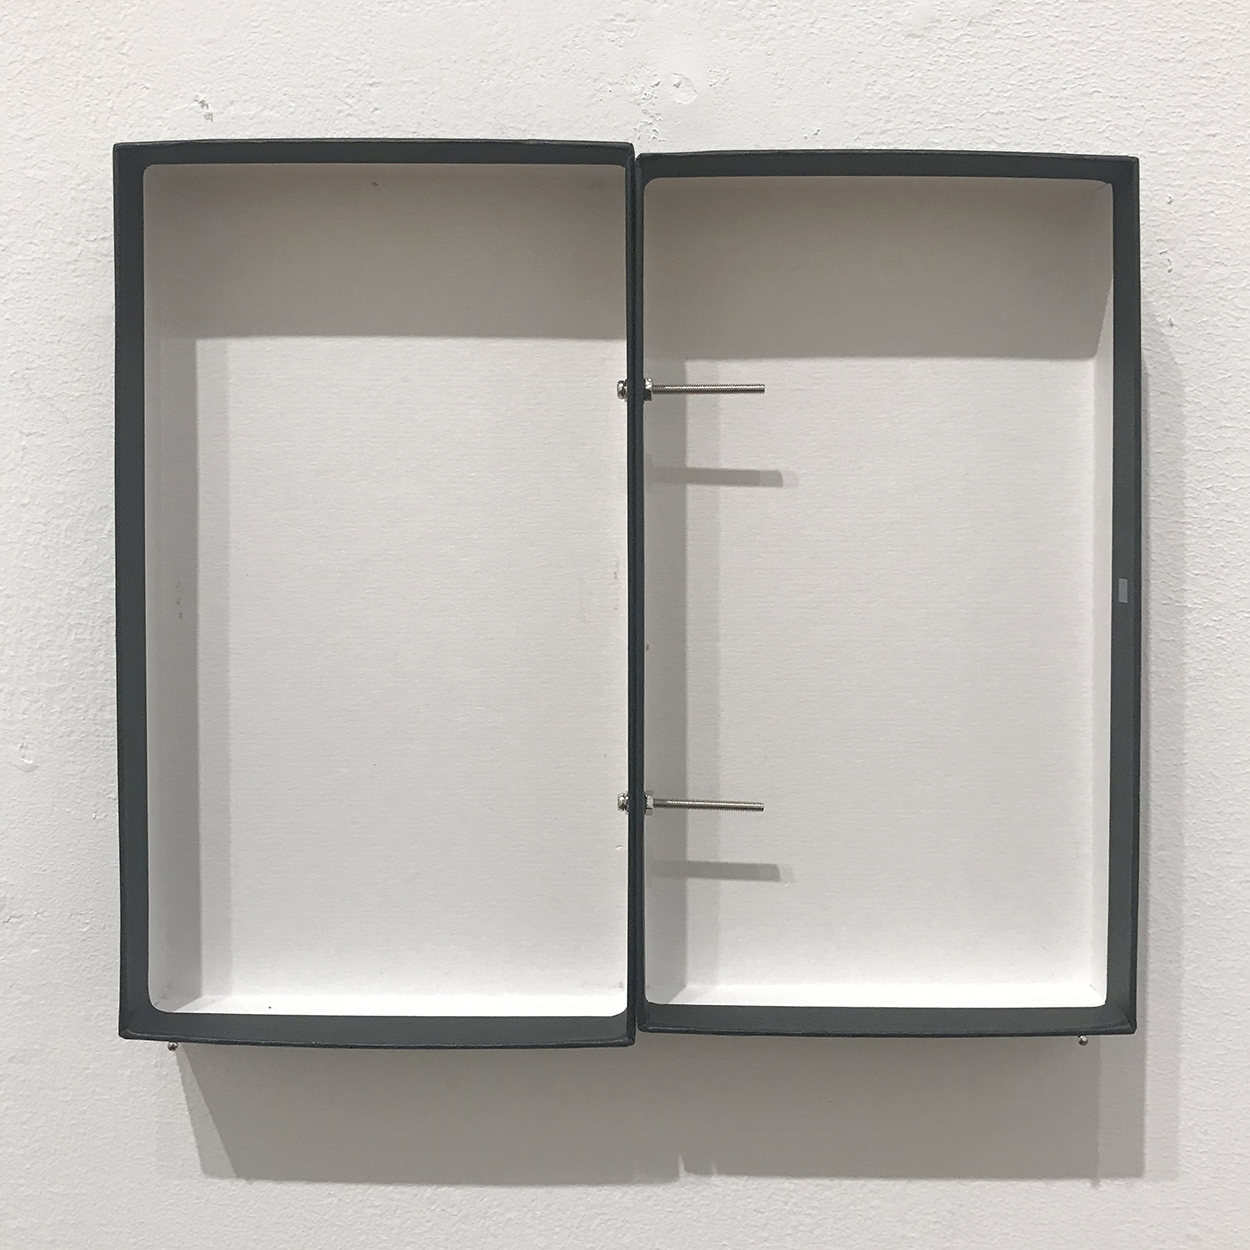 　　　Untitled, Paper box, screw nail, 150 x 171 ×21 mm, 2020